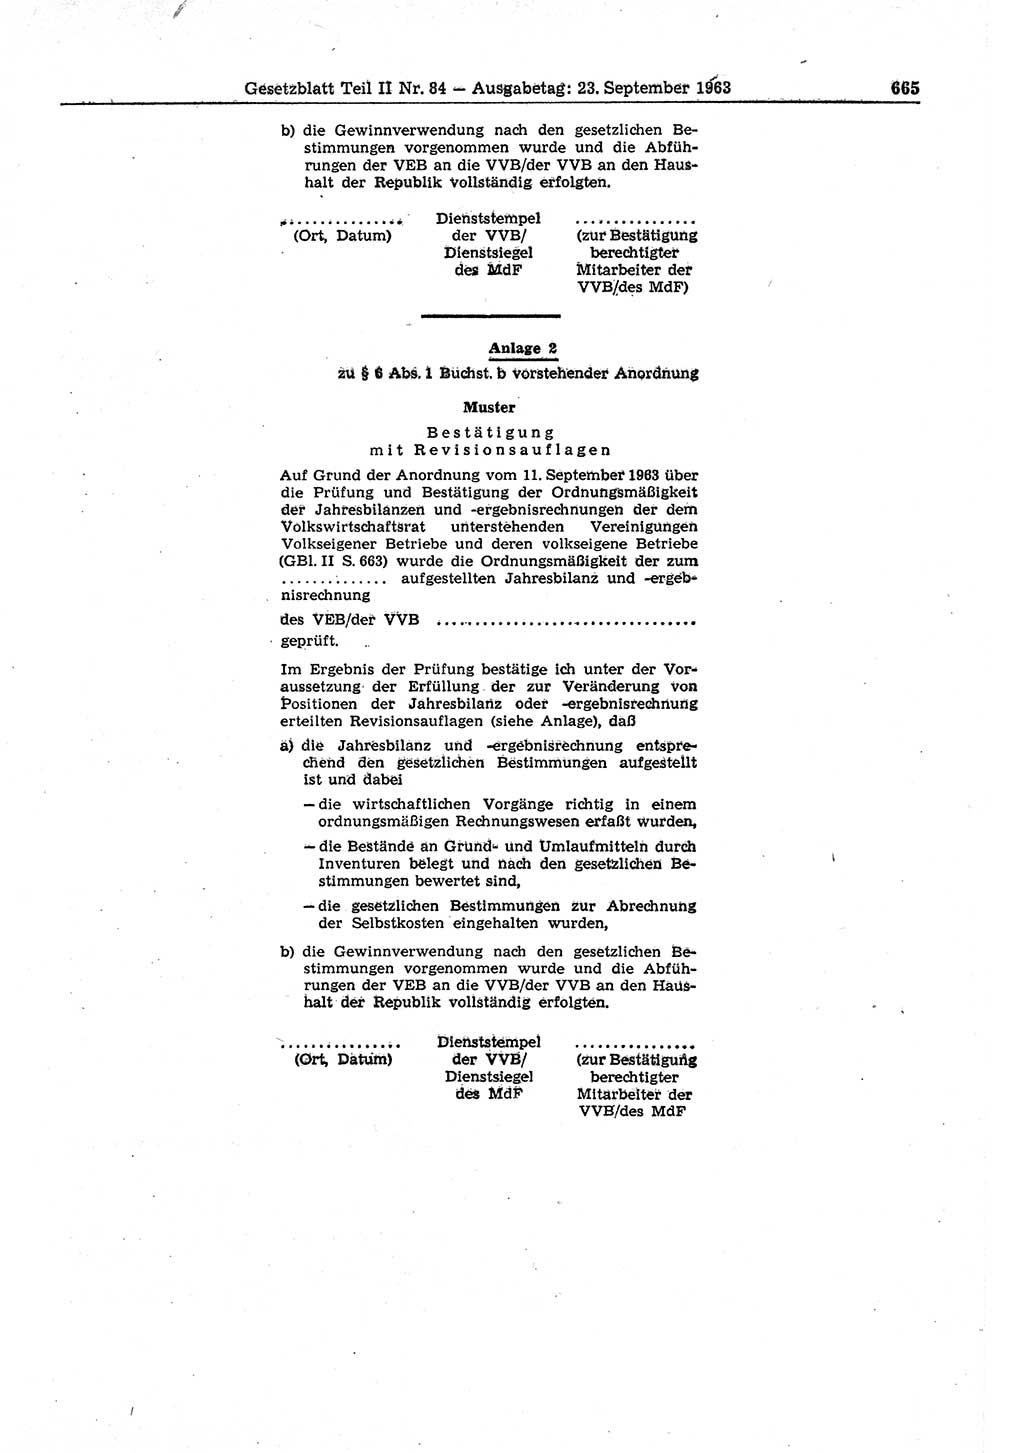 Gesetzblatt (GBl.) der Deutschen Demokratischen Republik (DDR) Teil ⅠⅠ 1963, Seite 665 (GBl. DDR ⅠⅠ 1963, S. 665)